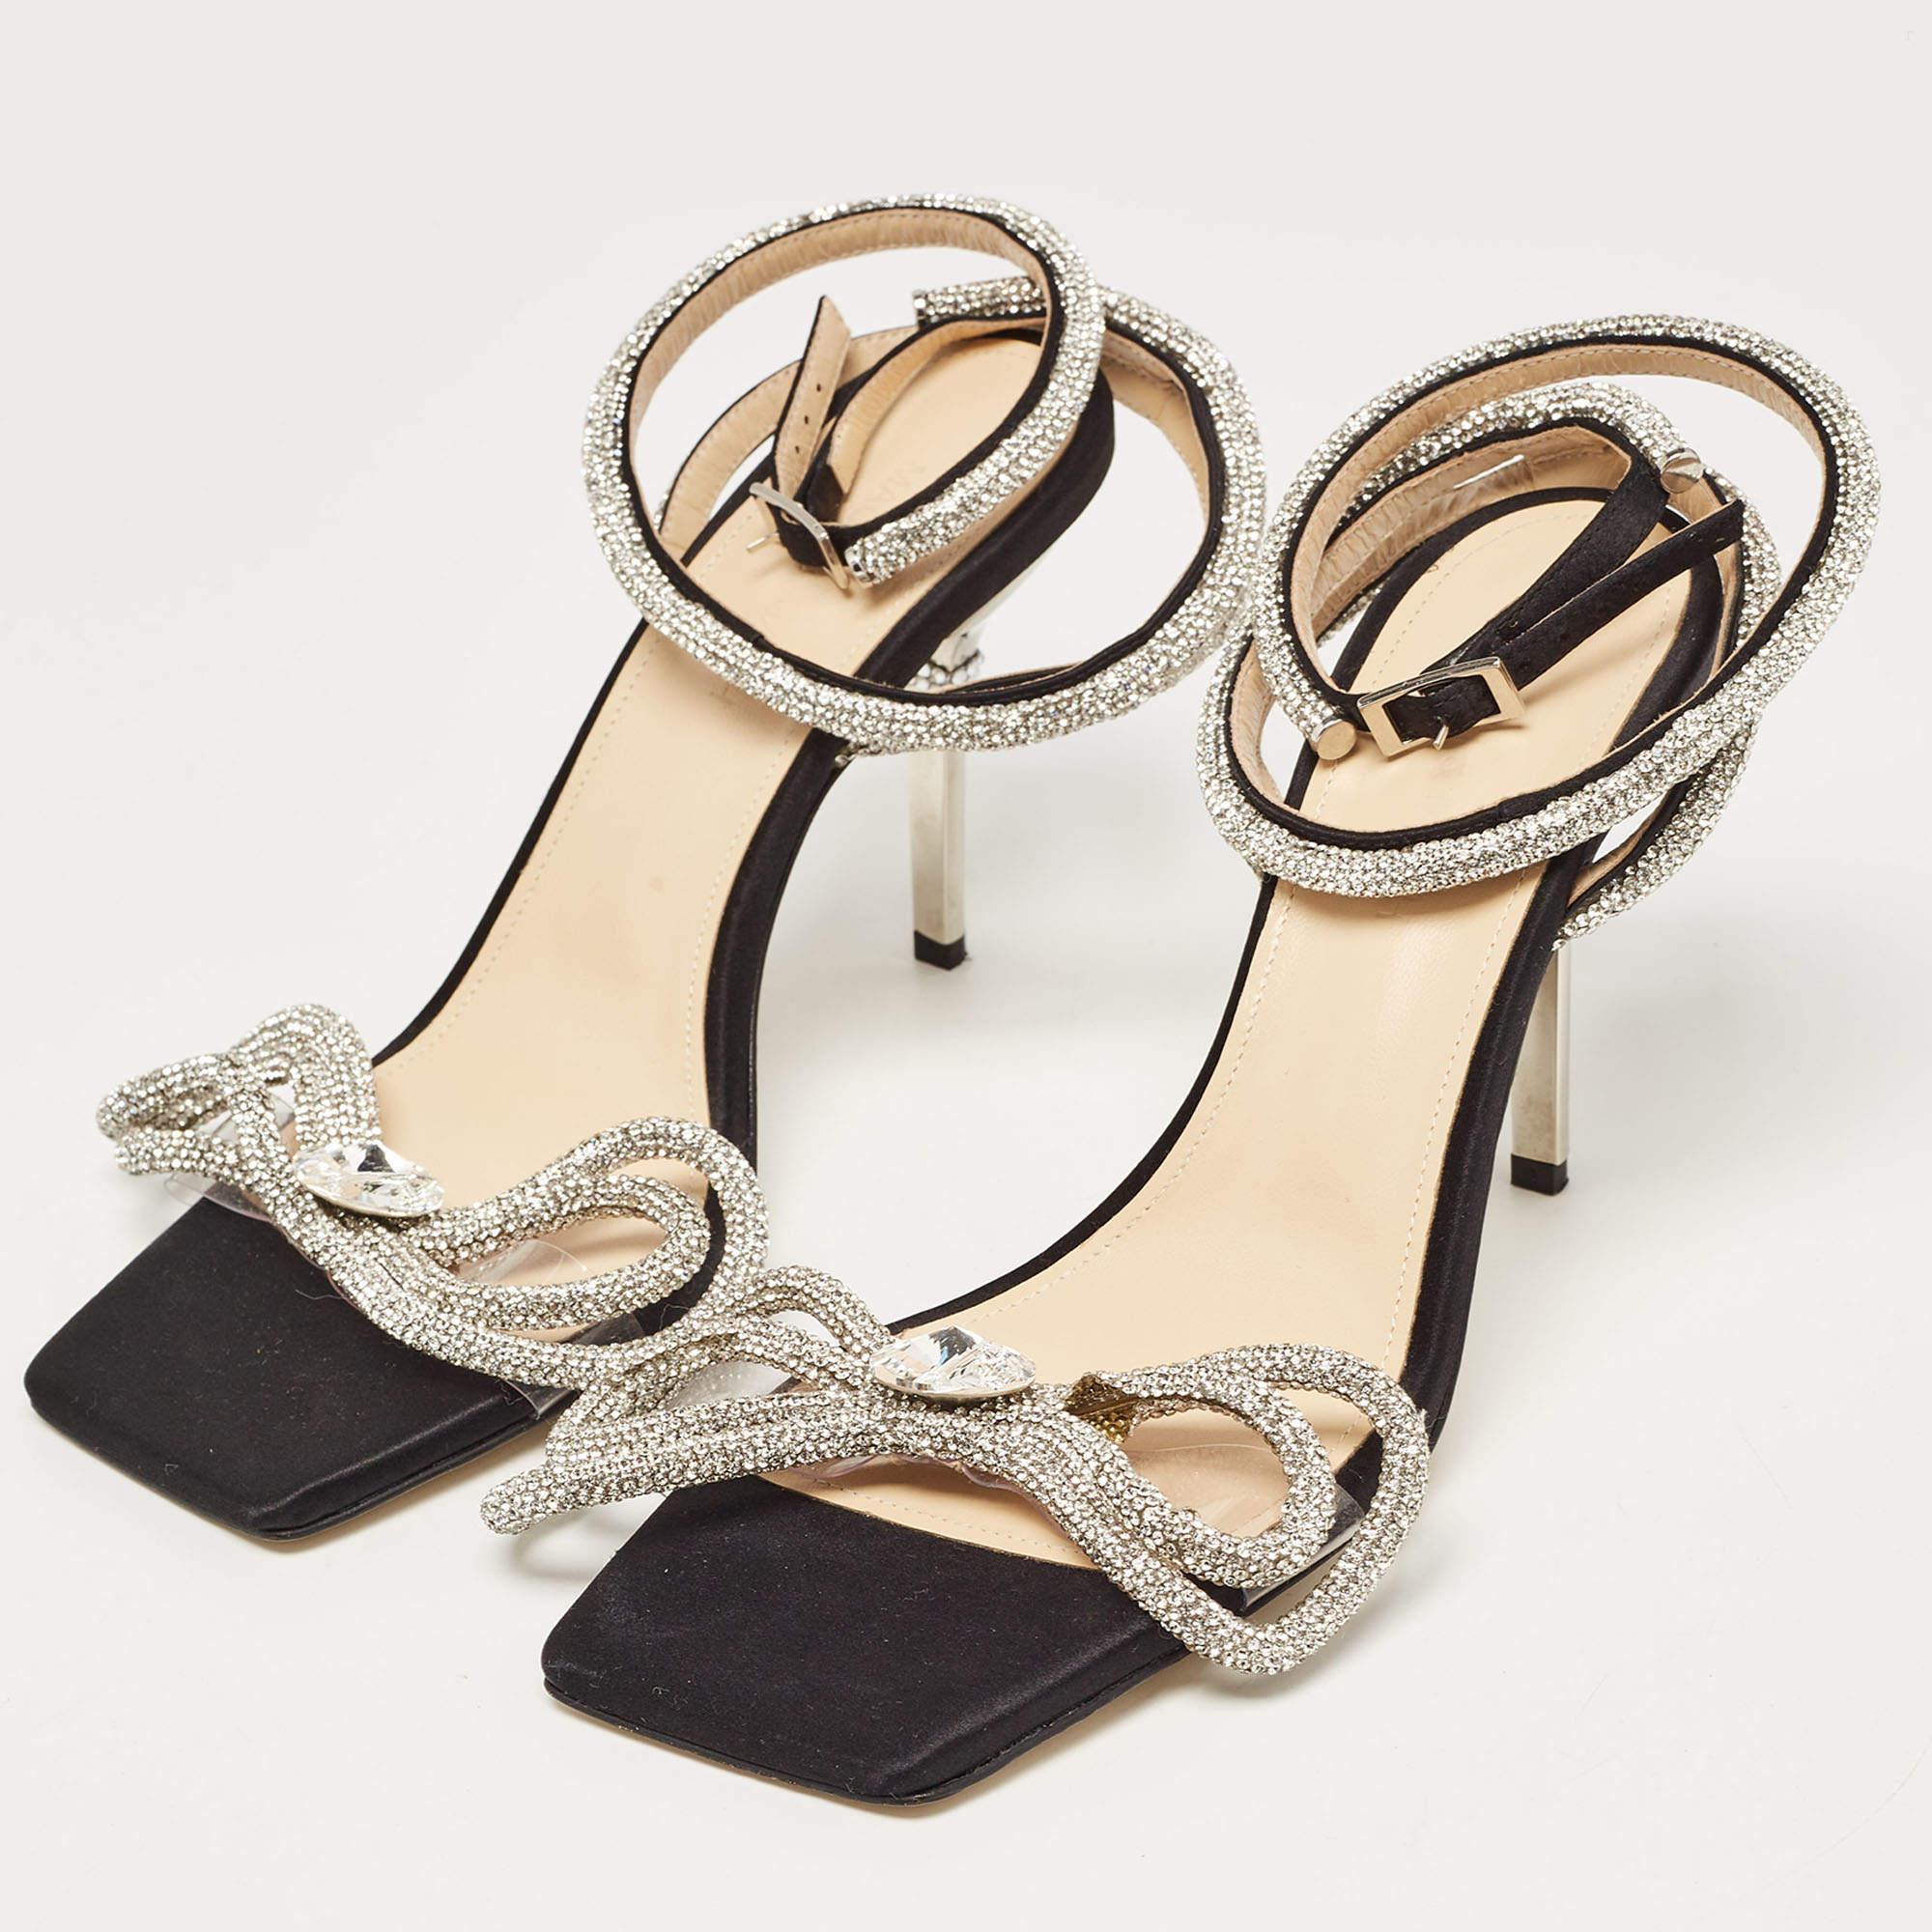  Mach & Mach - Sandales enveloppantes à double nœud en satin noir ornées de cristaux  Pour femmes 